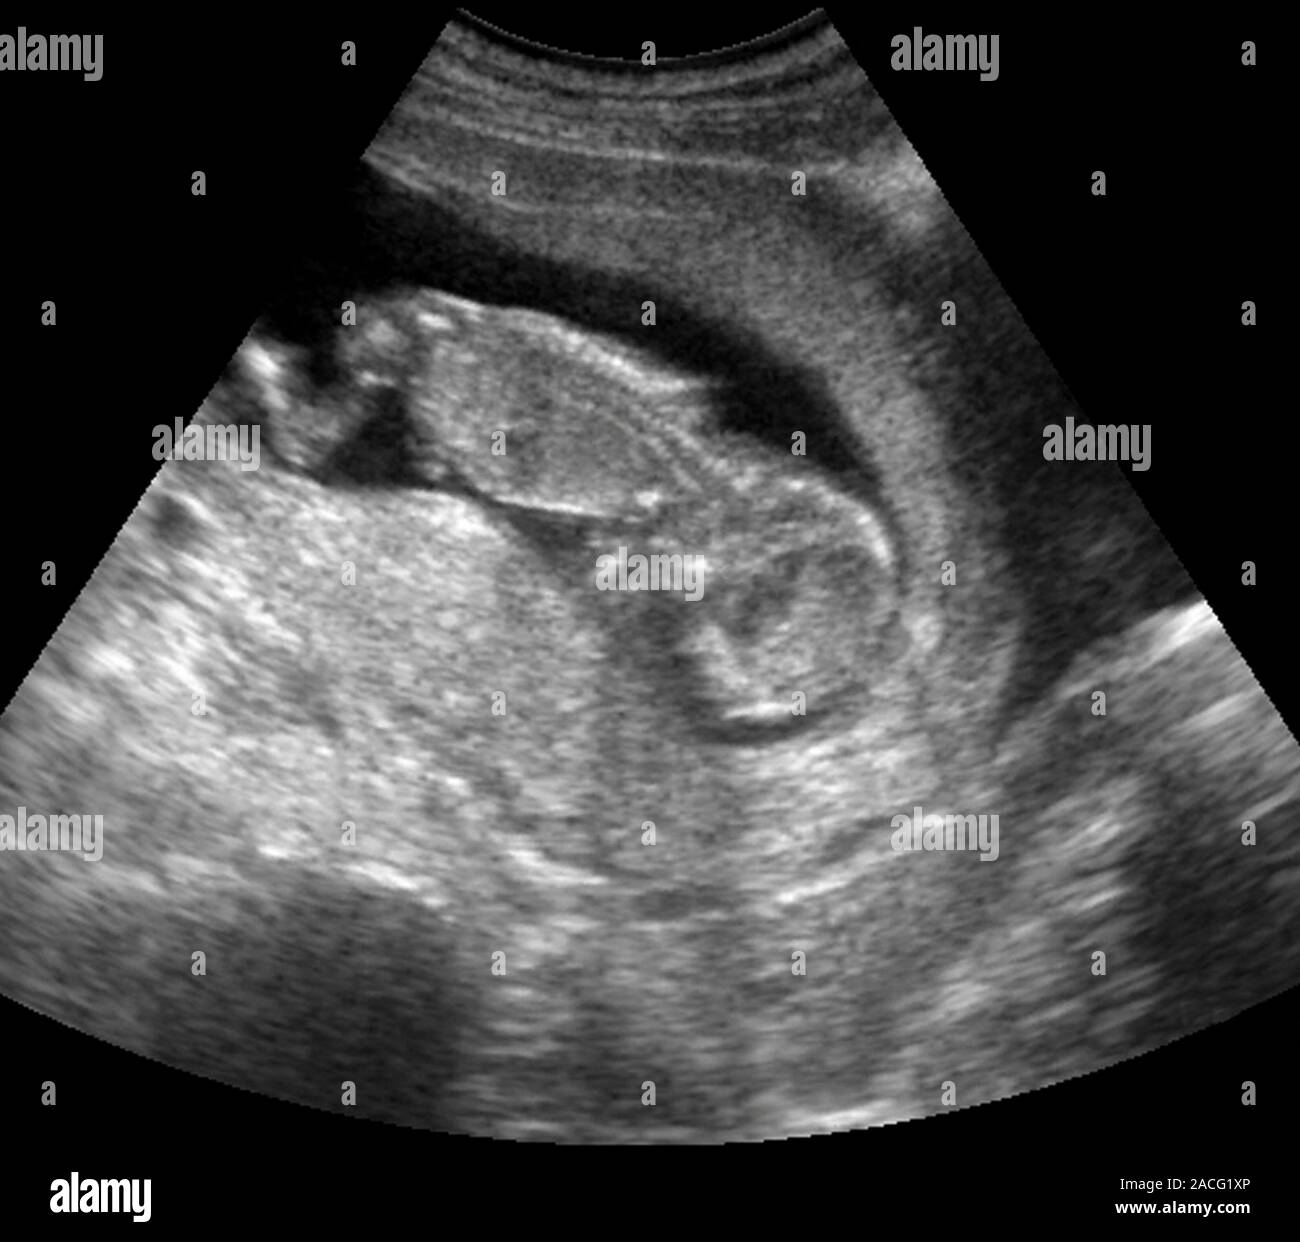 Роды на 12 неделе. 12 Недель беременности фото плода на УЗИ. Снимки УЗИ беременности 12 недель. УЗИ малыша на 12 неделе беременности фото.